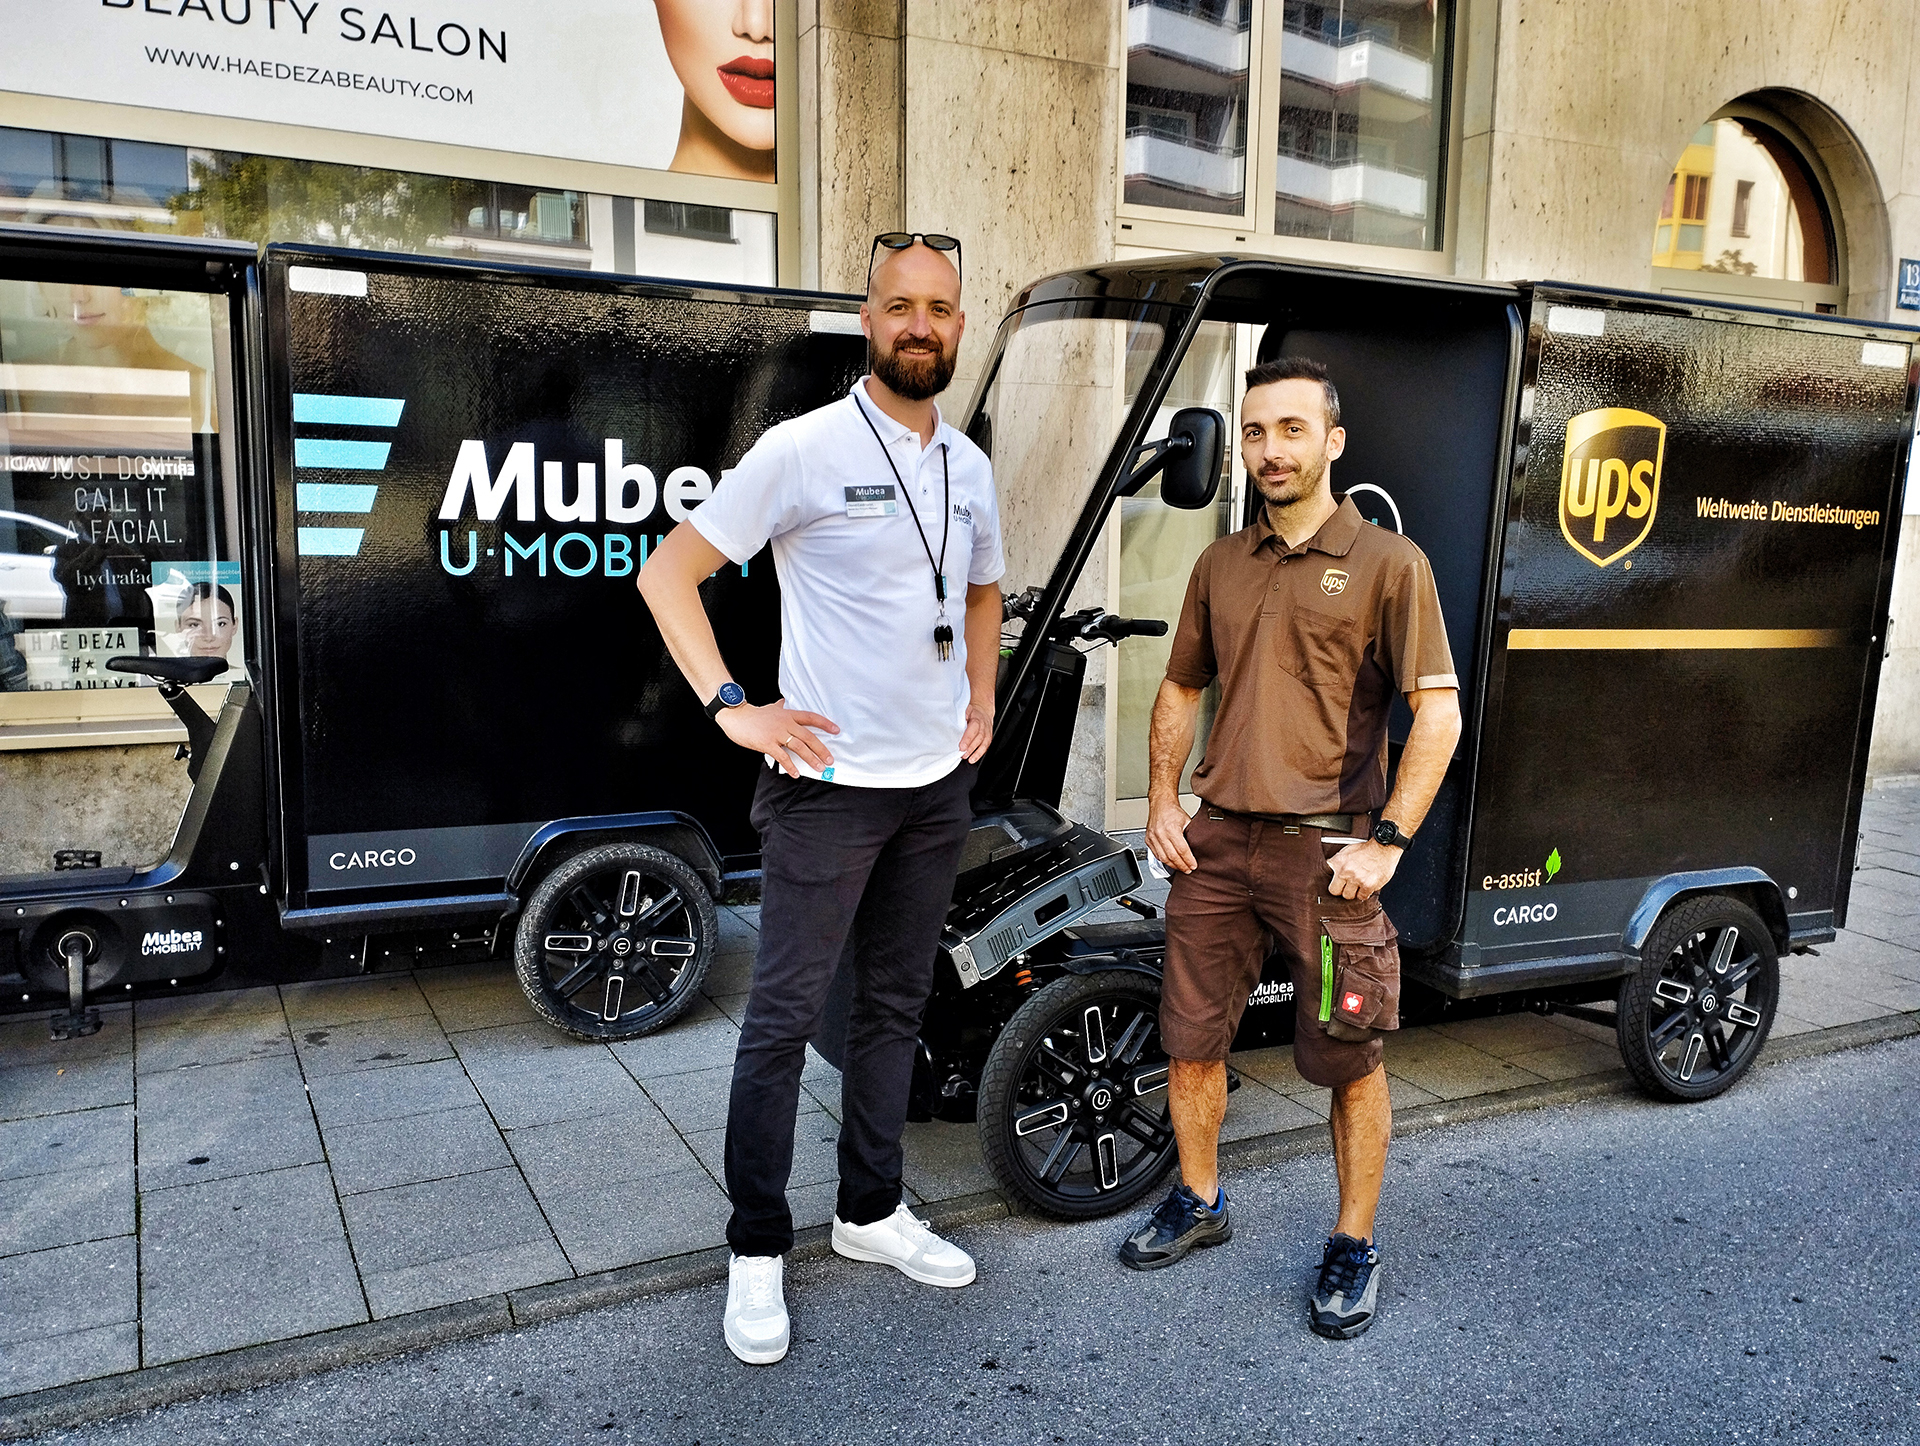 Mubea U-Mobility E-Lastenrad UPS München